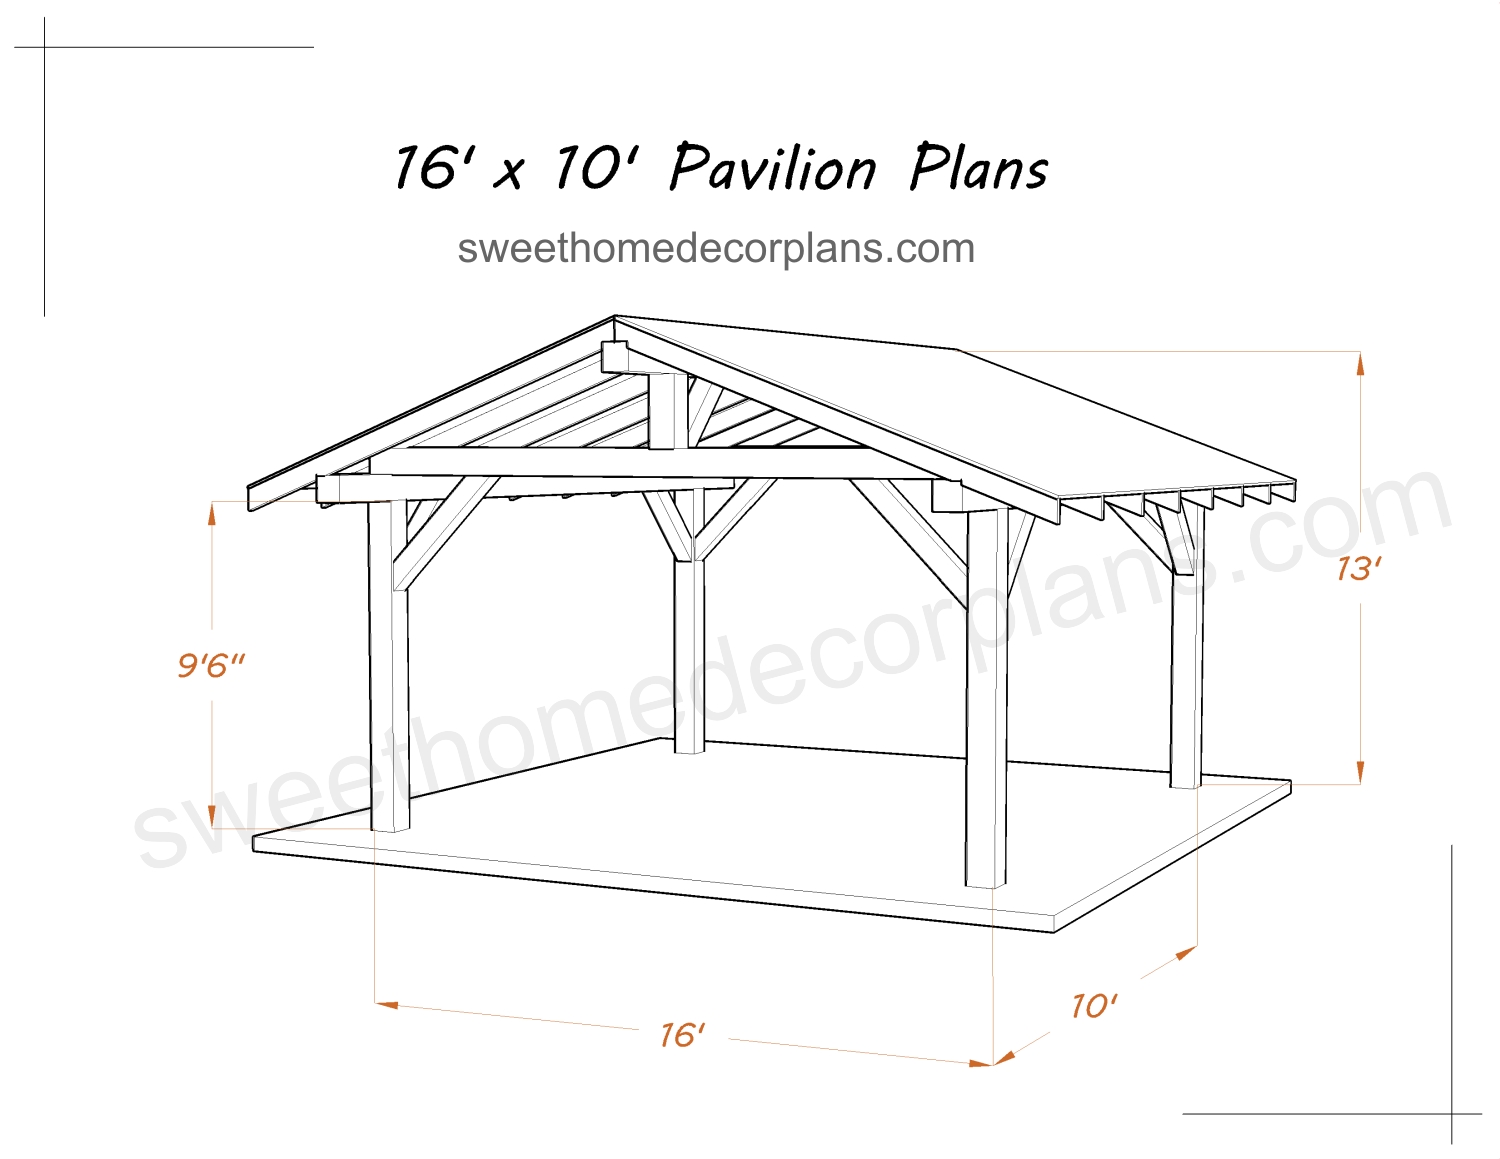 Diy-16-х-10-gable-pavilion-plans-for-outdoor